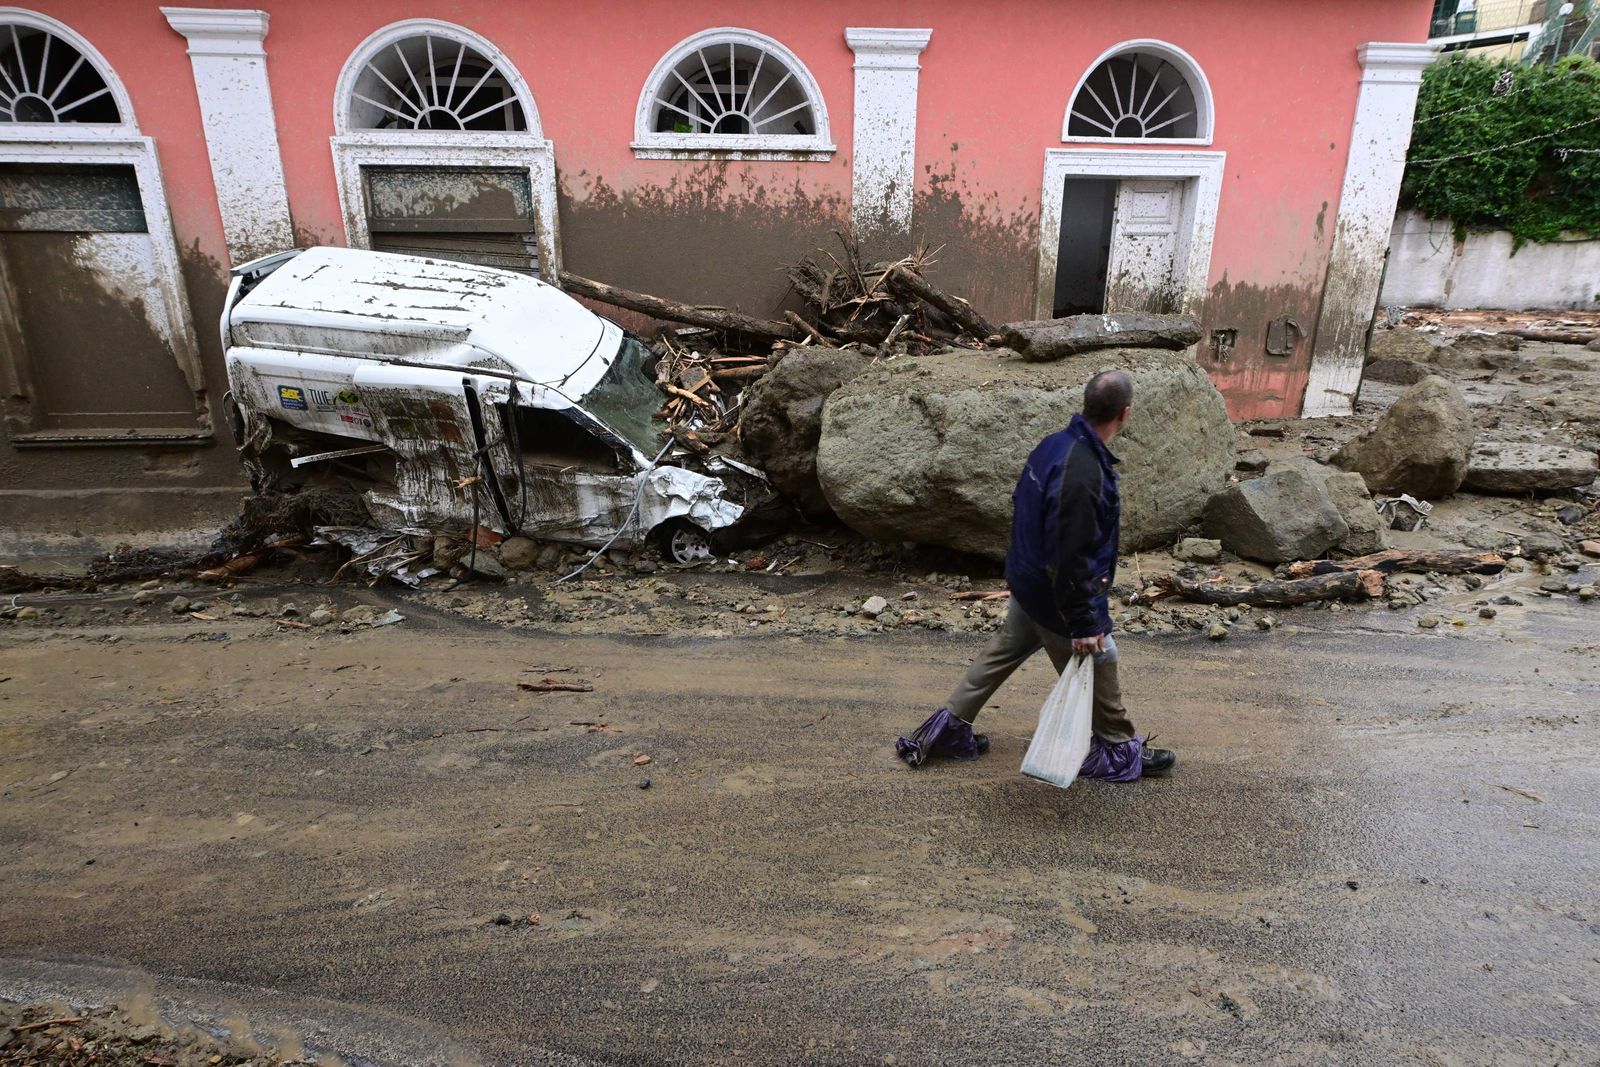 ساكن محلي يسير بجوار سيارة متضررة مدمرة بعد هطول أمطار غزيرة تسببت في انهيار أرضي بجزيرة إيسكيا جنوبي إيطاليا- 26 نوفمبر 2022 - AFP